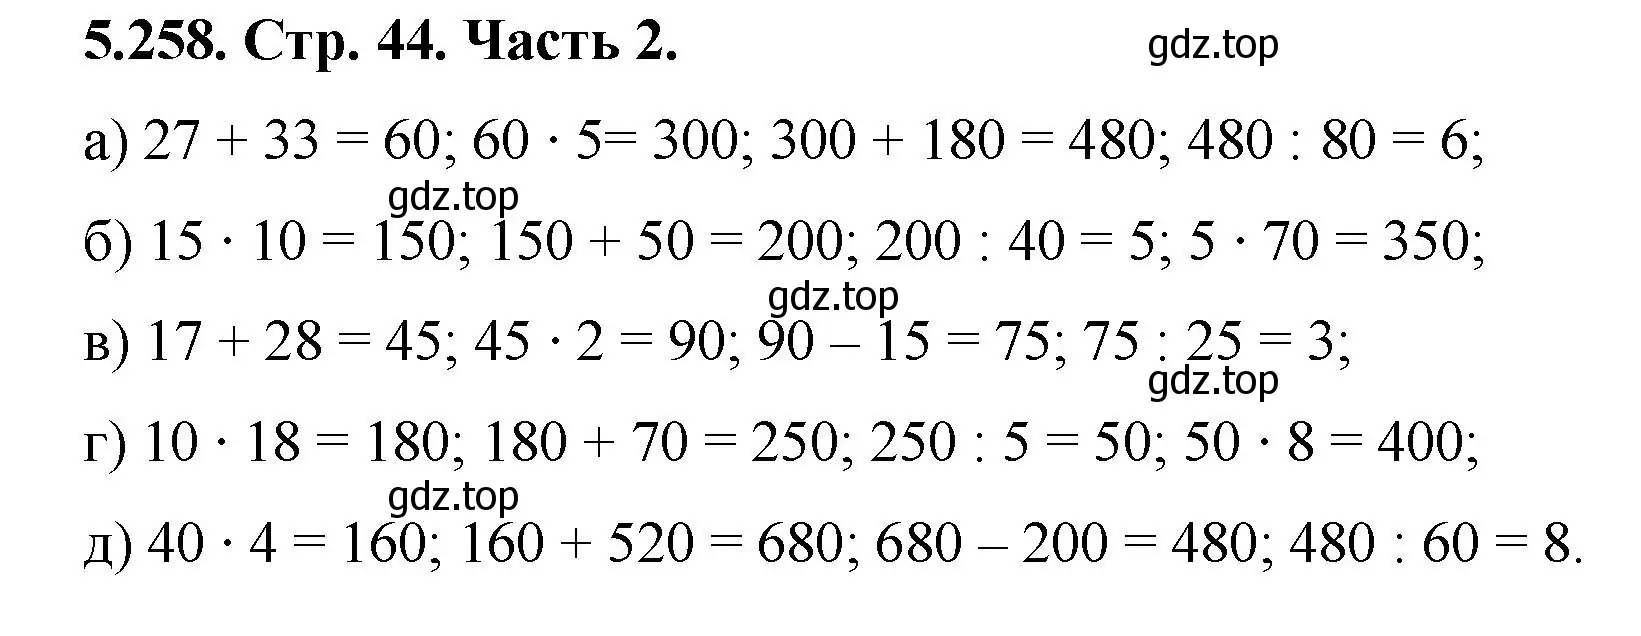 Решение номер 5.258 (страница 44) гдз по математике 5 класс Виленкин, Жохов, учебник 2 часть